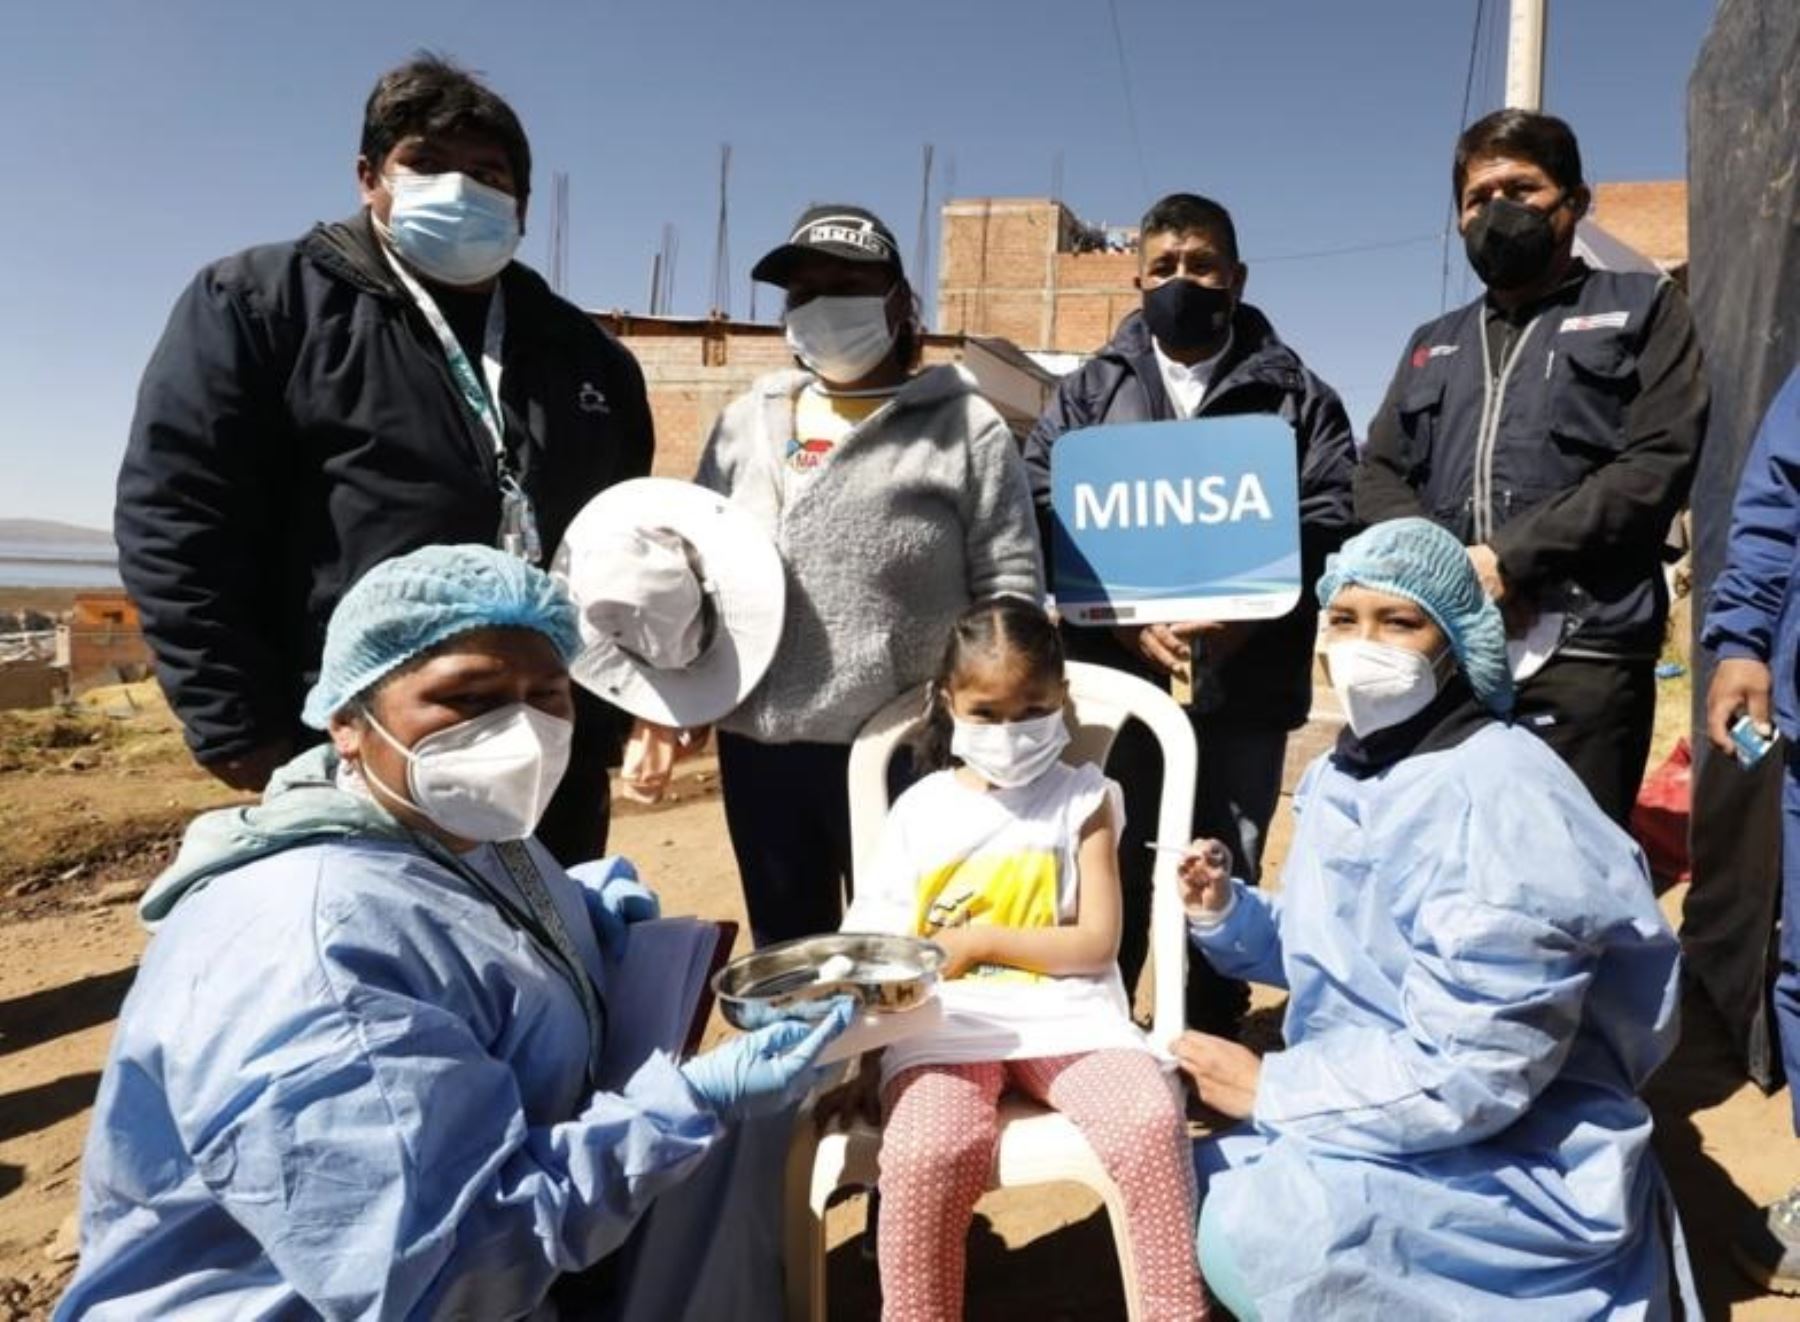 Minsa brindó atenciones de salud durante campaña gratuita que se desarrolló ayer en el barrio Manto Central de Puno.